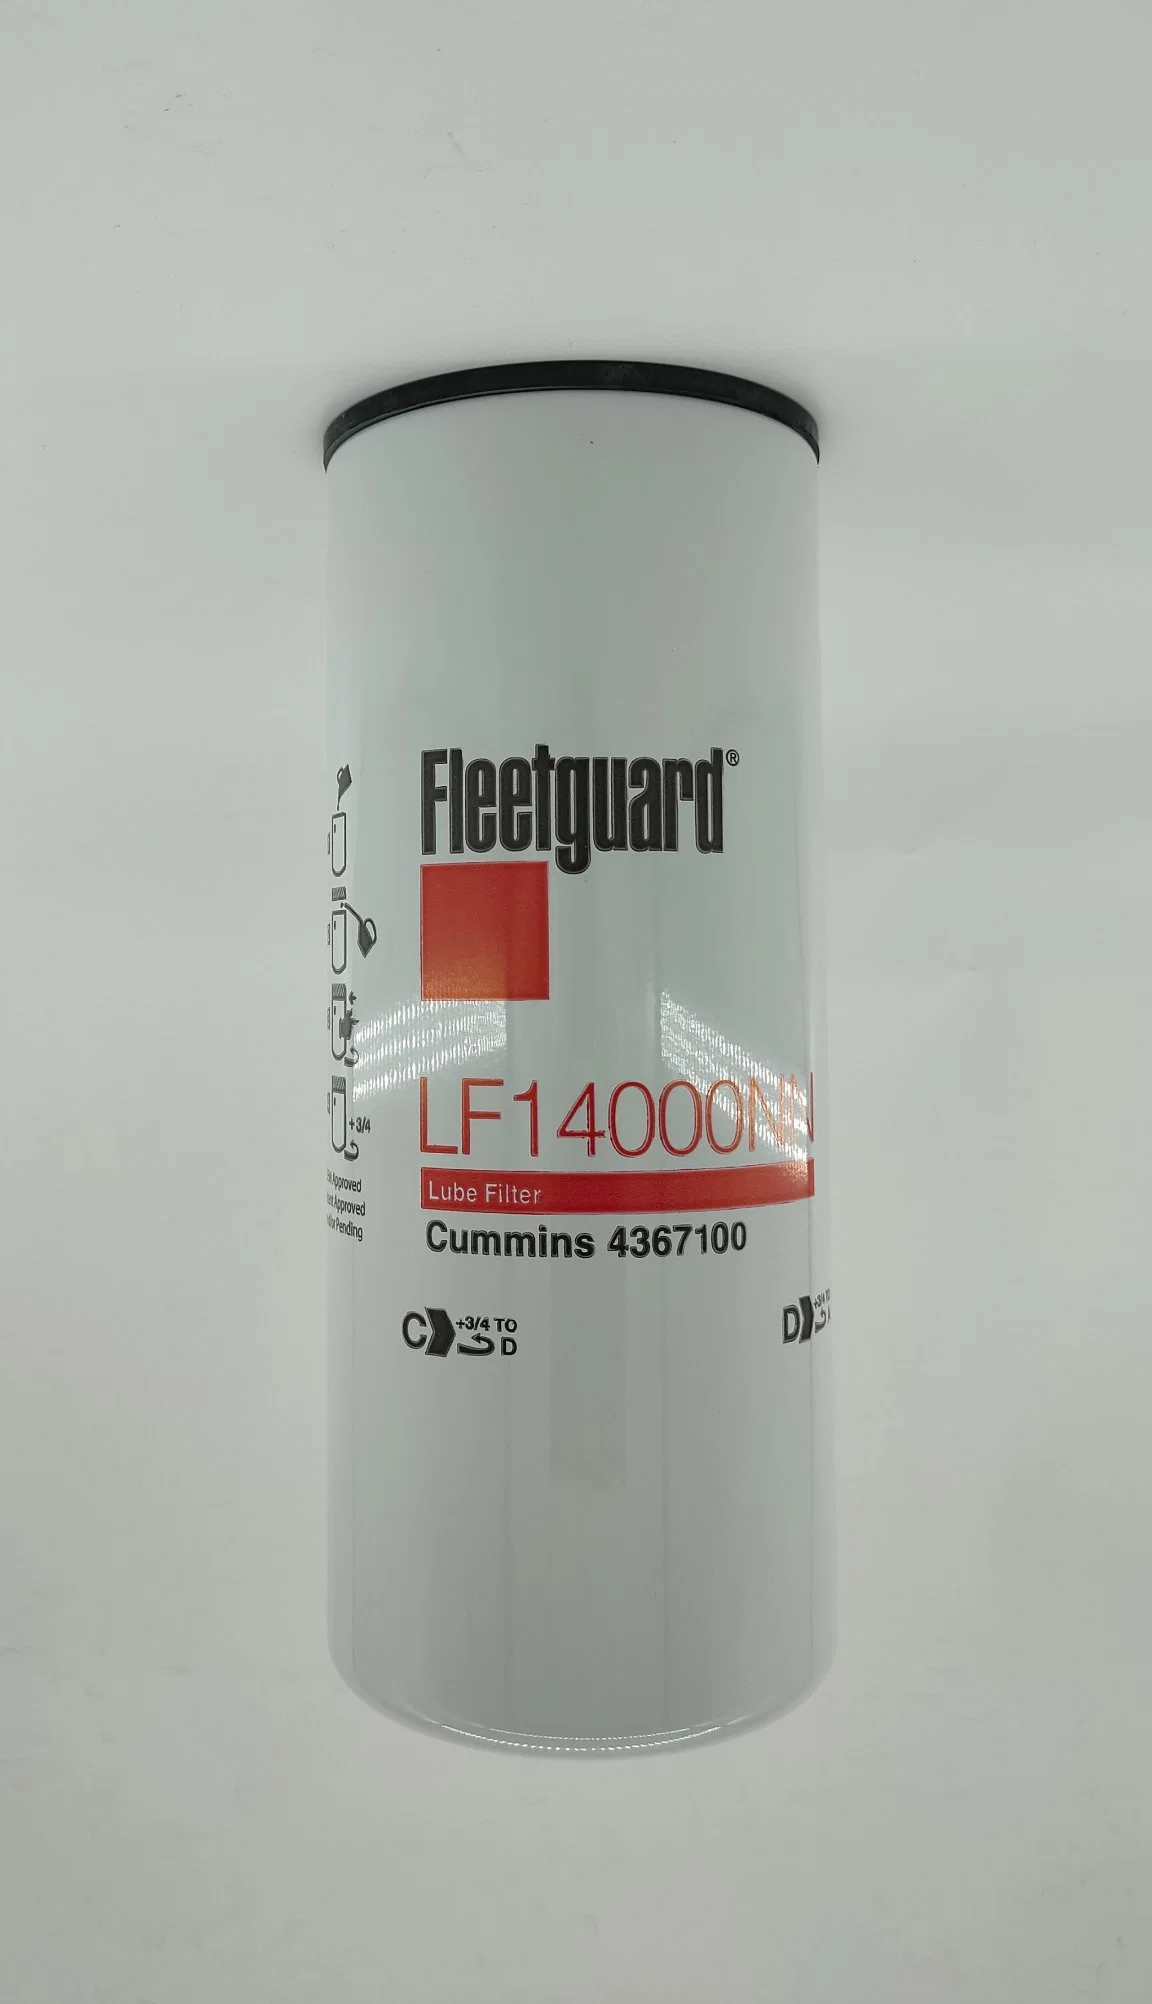 Lf14000 Fleetguard фильтр системы смазки смазка Фильтр масляный фильтр Combo Spinon местных топливный фильтр Synthentic Spinon топливного фильтра грубой очистки воды фильтр воздушный фильтр для двигателей Cummins